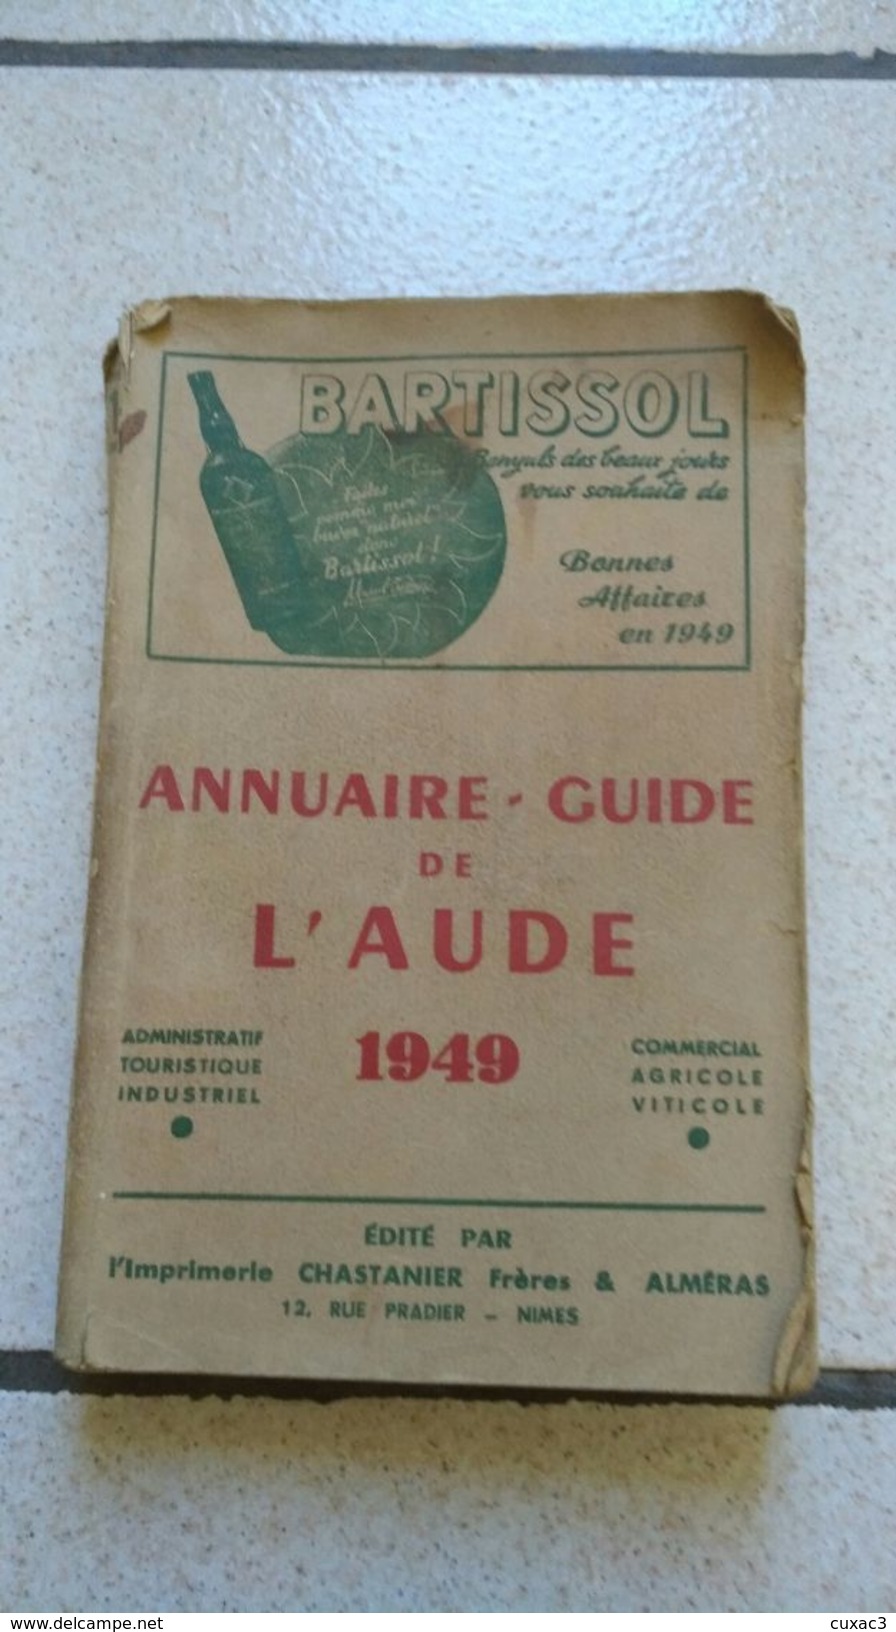 Annuaires-guide De L'aude 1949 - BARTISSOL - Telefonbücher